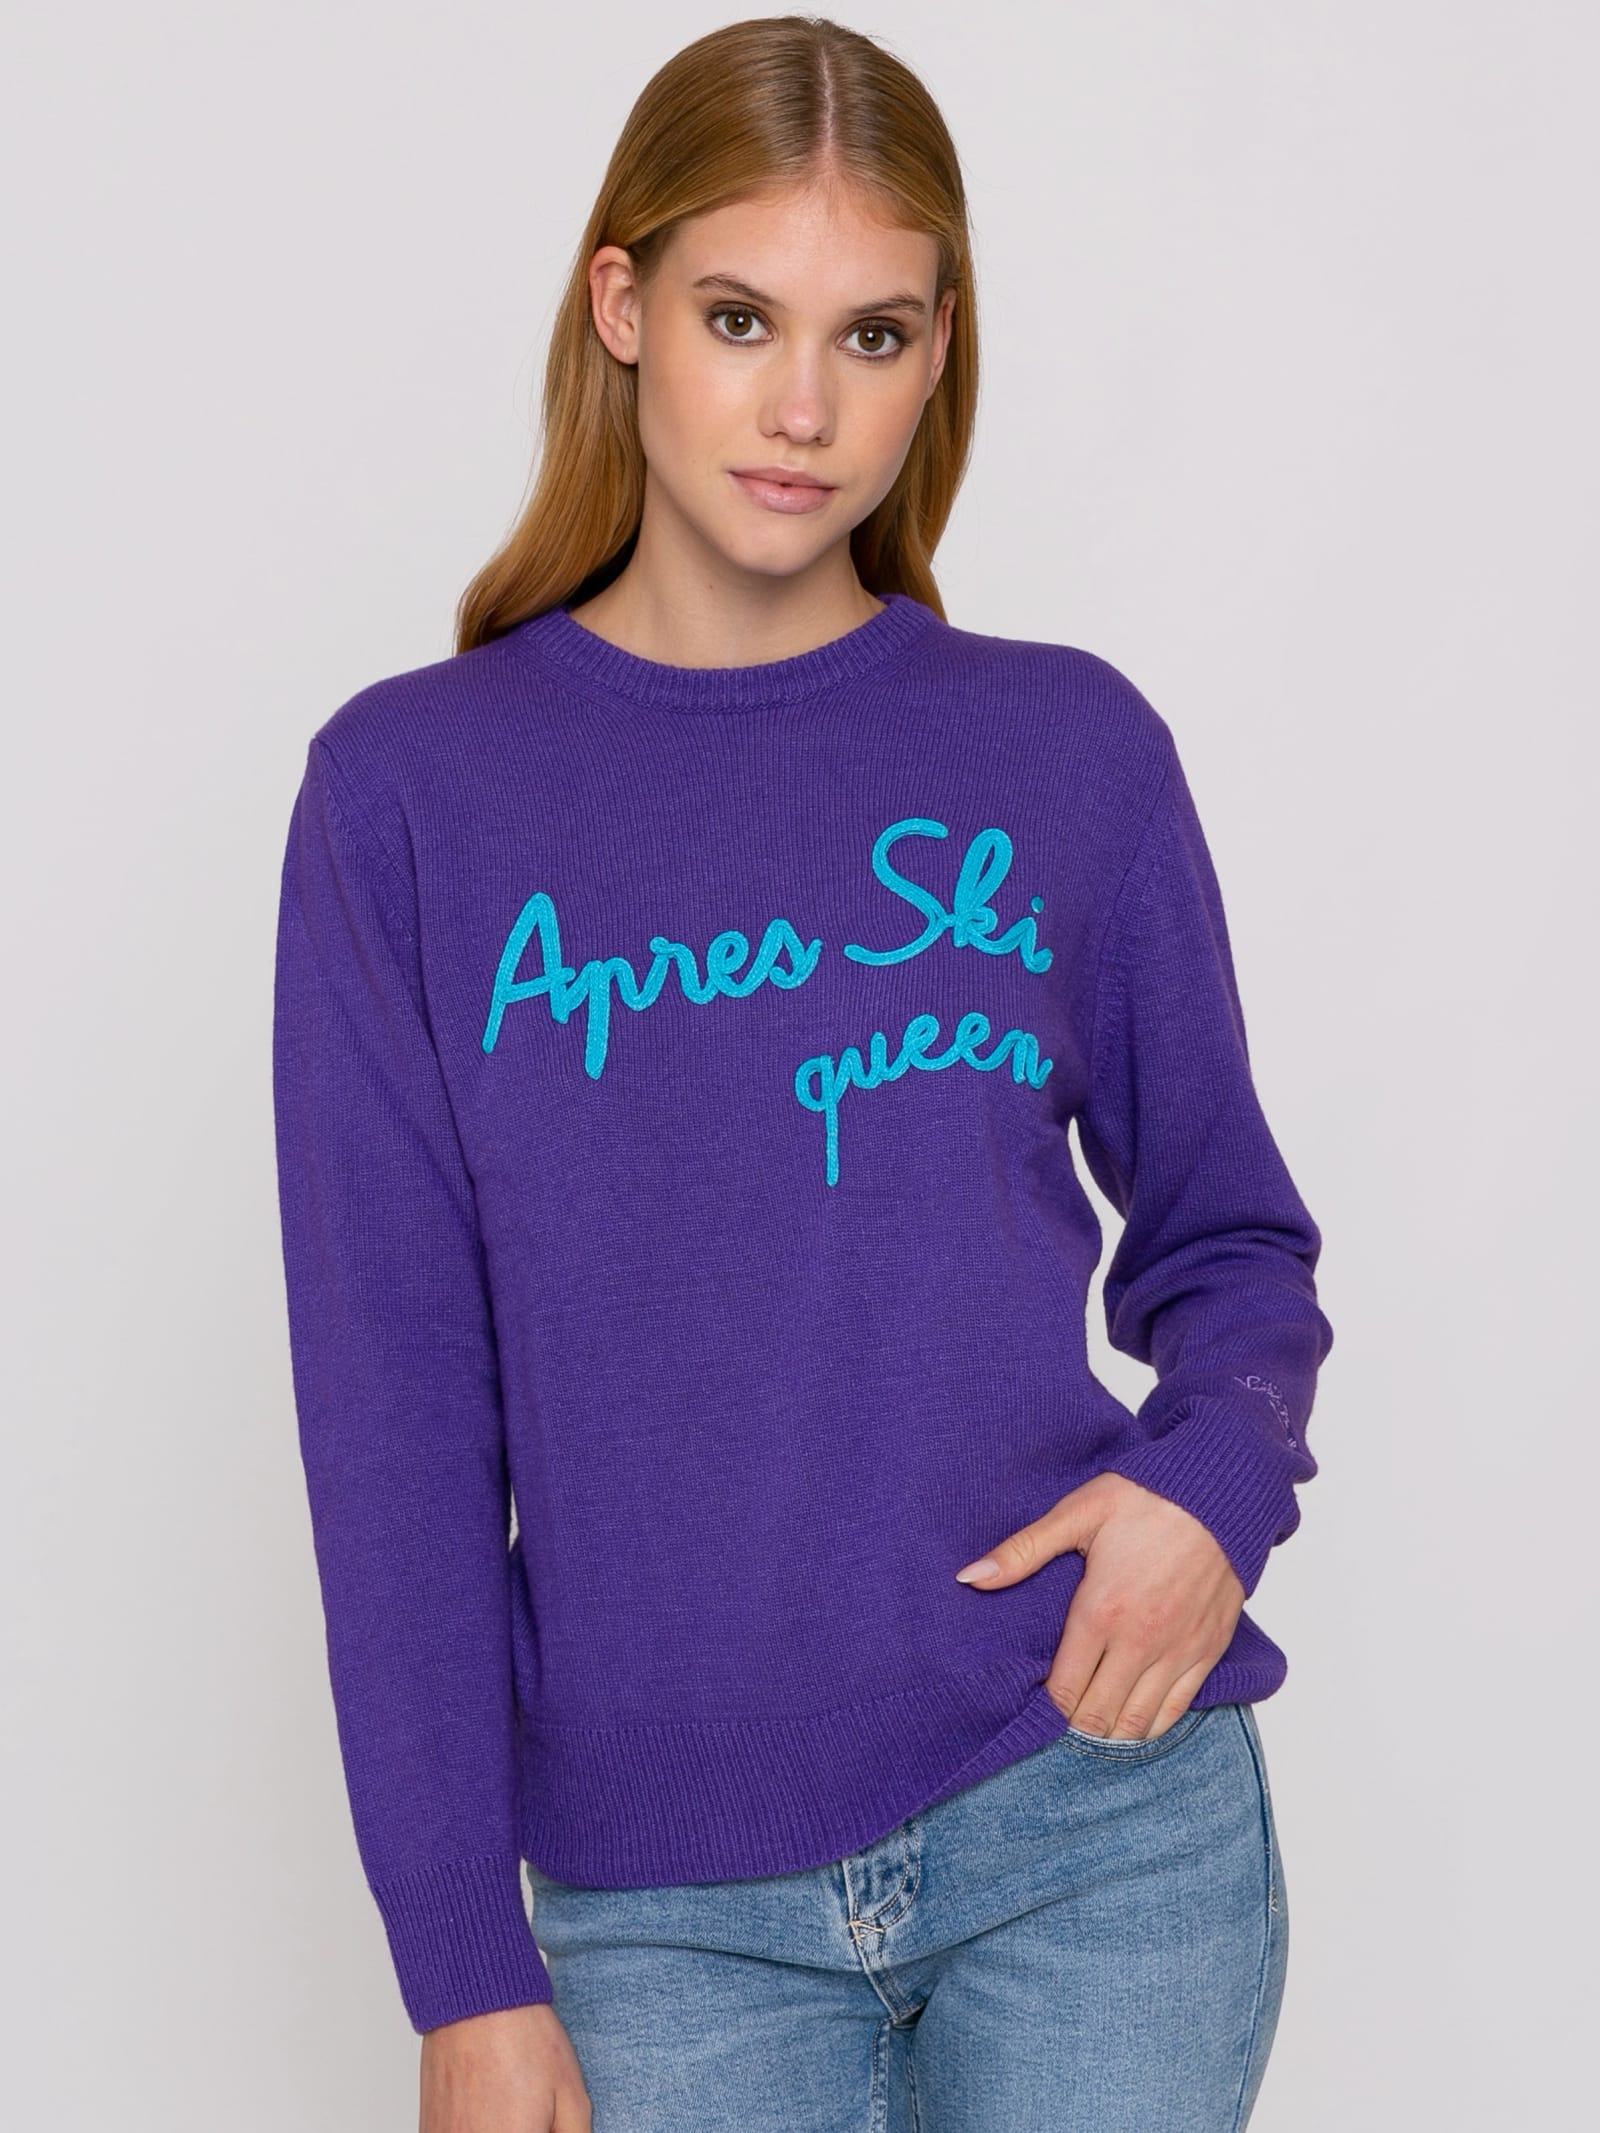 MC2 Saint Barth Woman Purple Sweater Apres Ski Queen Embroidery